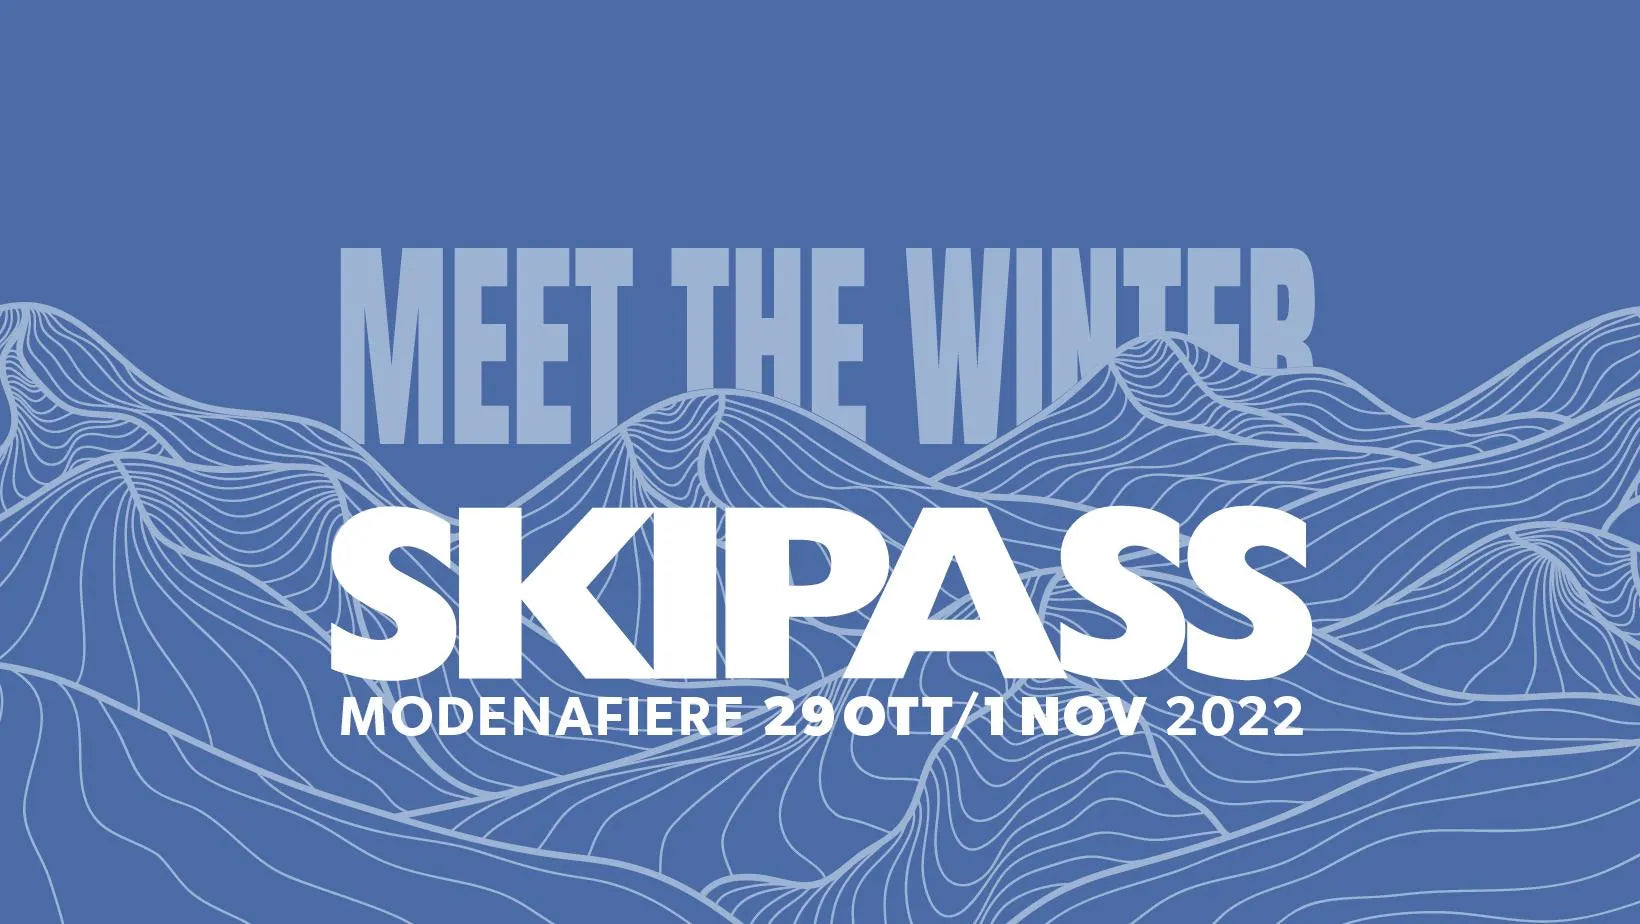 Meet the winter, meet Outdoor Master at SKIPASS 2022